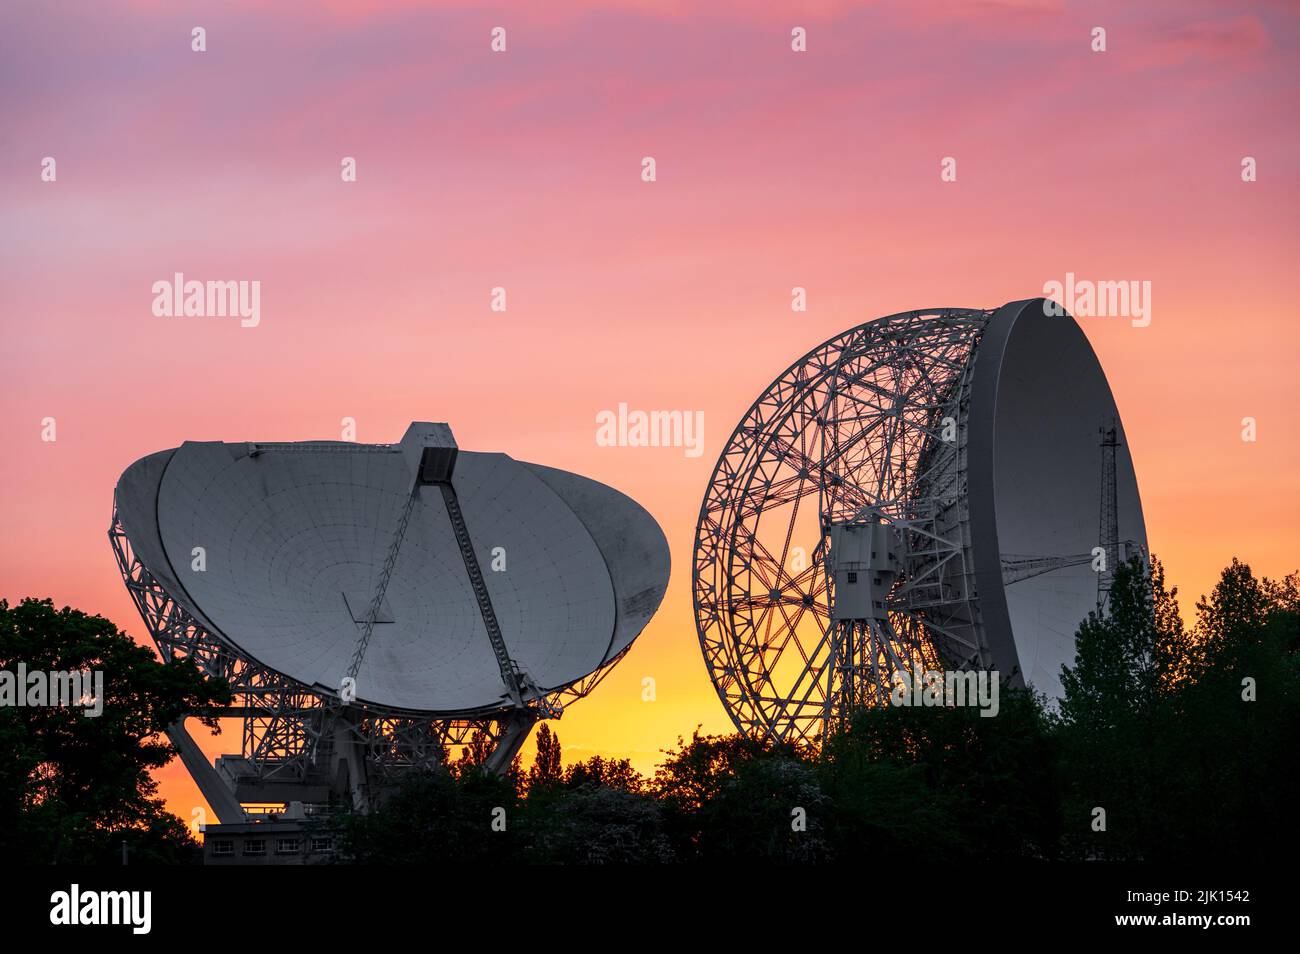 The Mark II Telescope and Lovell Mark I Giant Radio Telescope with amazing sunset, Jodrell Bank Observatory, Cheshire, England, United Kingdom, Europe Stock Photo